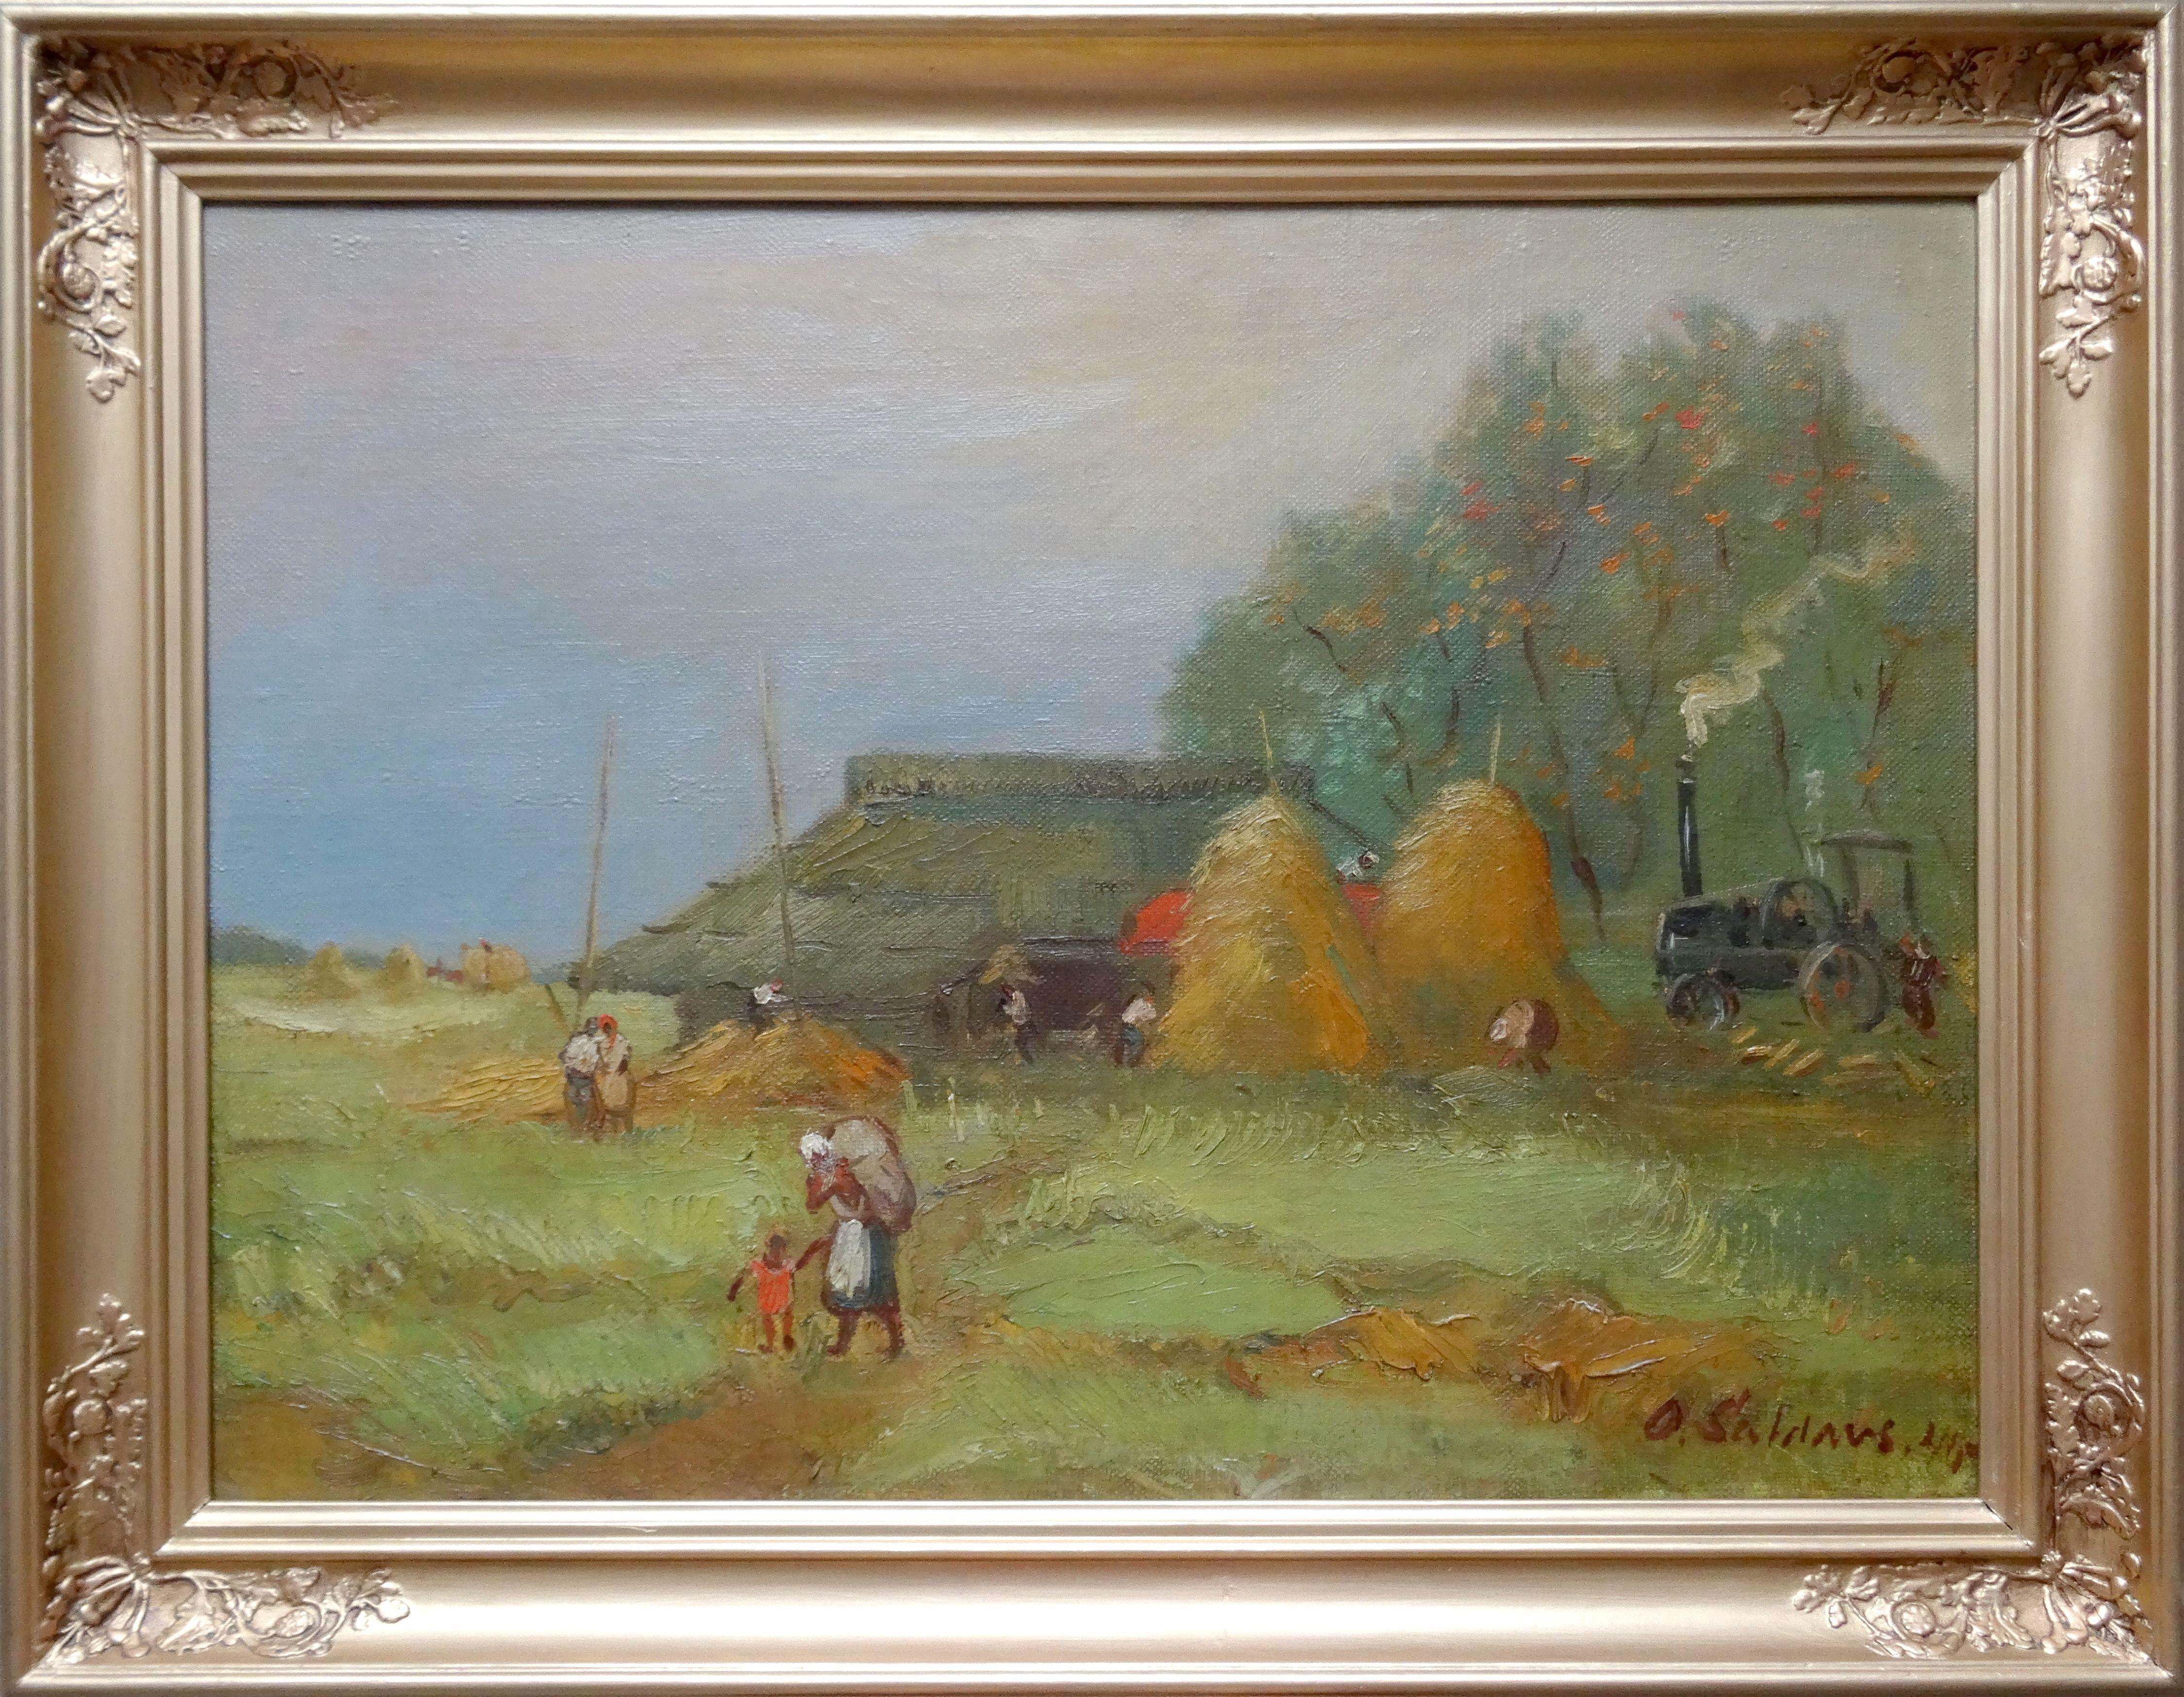 Battage 1940. Toile, huile. 54,5 x 73,5 cm - Painting de Saldavs Olgerts